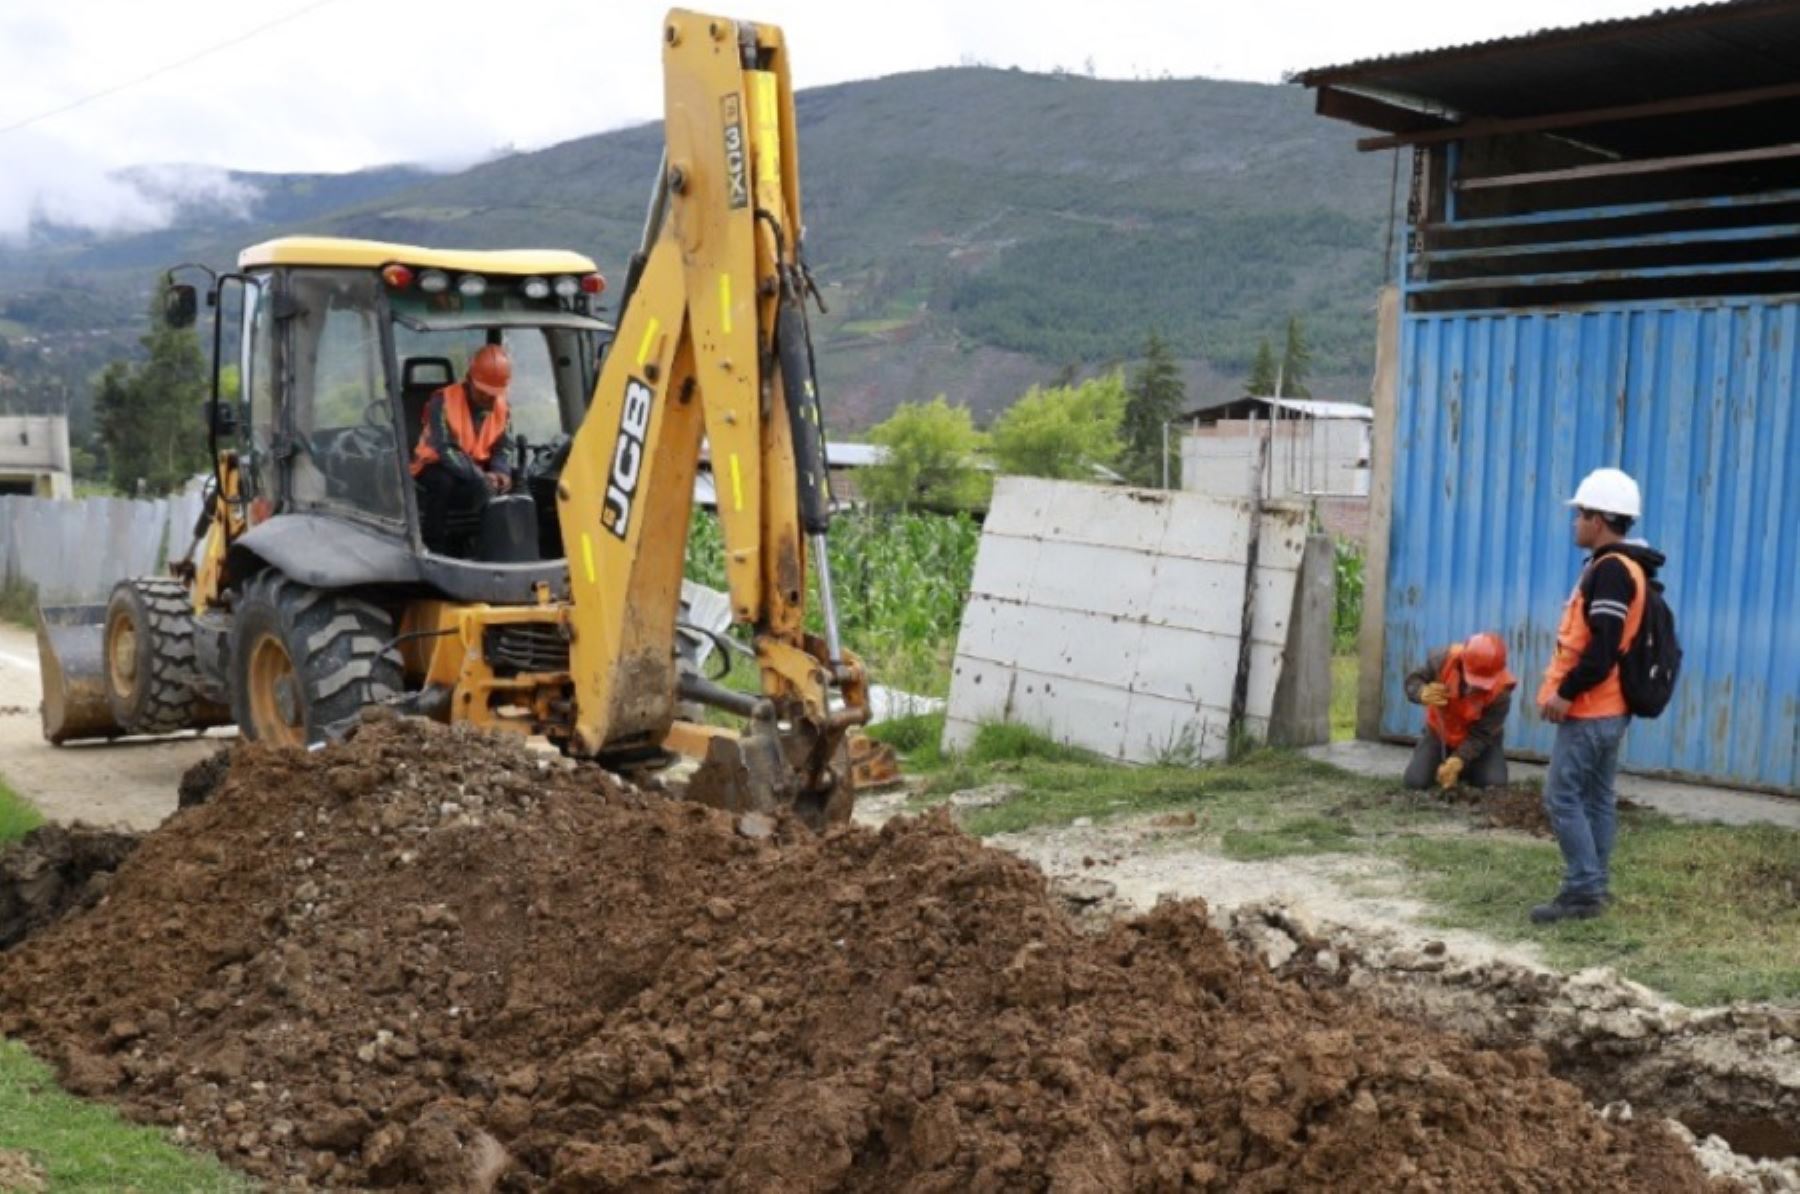 Con casi S/ 4 millones de inversión del Ministerio de Vivienda, Construcción y Saneamiento, se inició la ejecución del proyecto de creación del sistema de agua potable y saneamiento en la comunidad campesina de Umasi, distrito de Hualla, provincia de Víctor Fajardo, en la región Ayacucho.